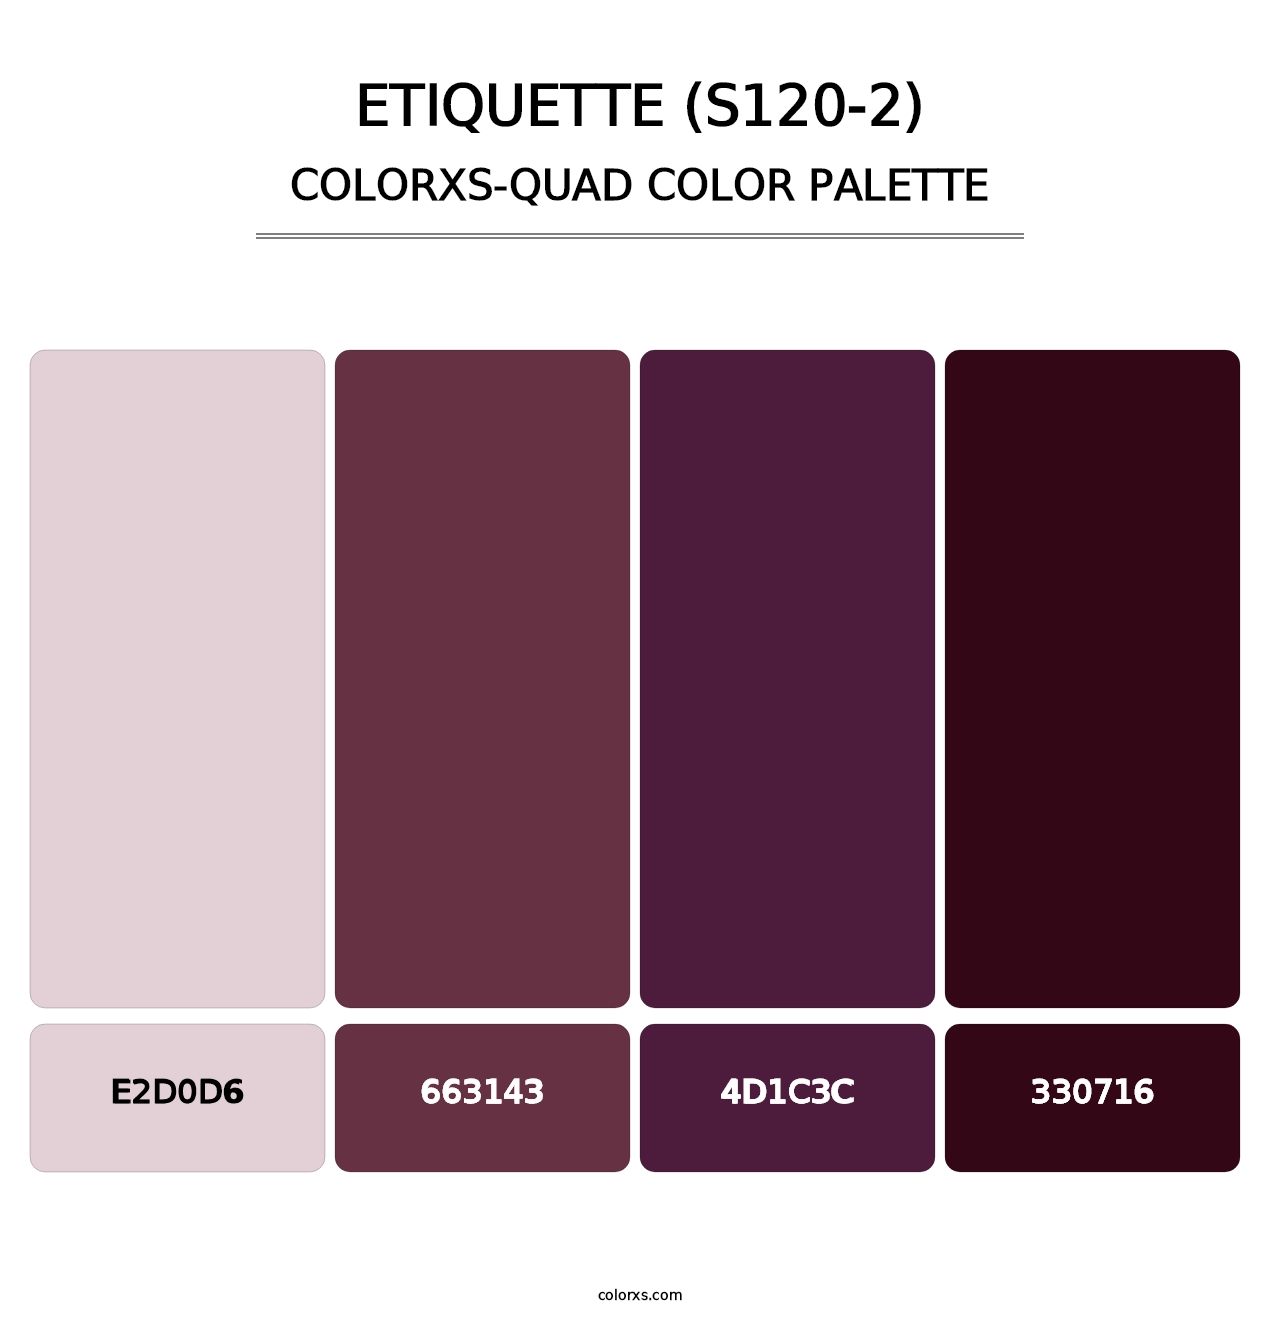 Etiquette (S120-2) - Colorxs Quad Palette